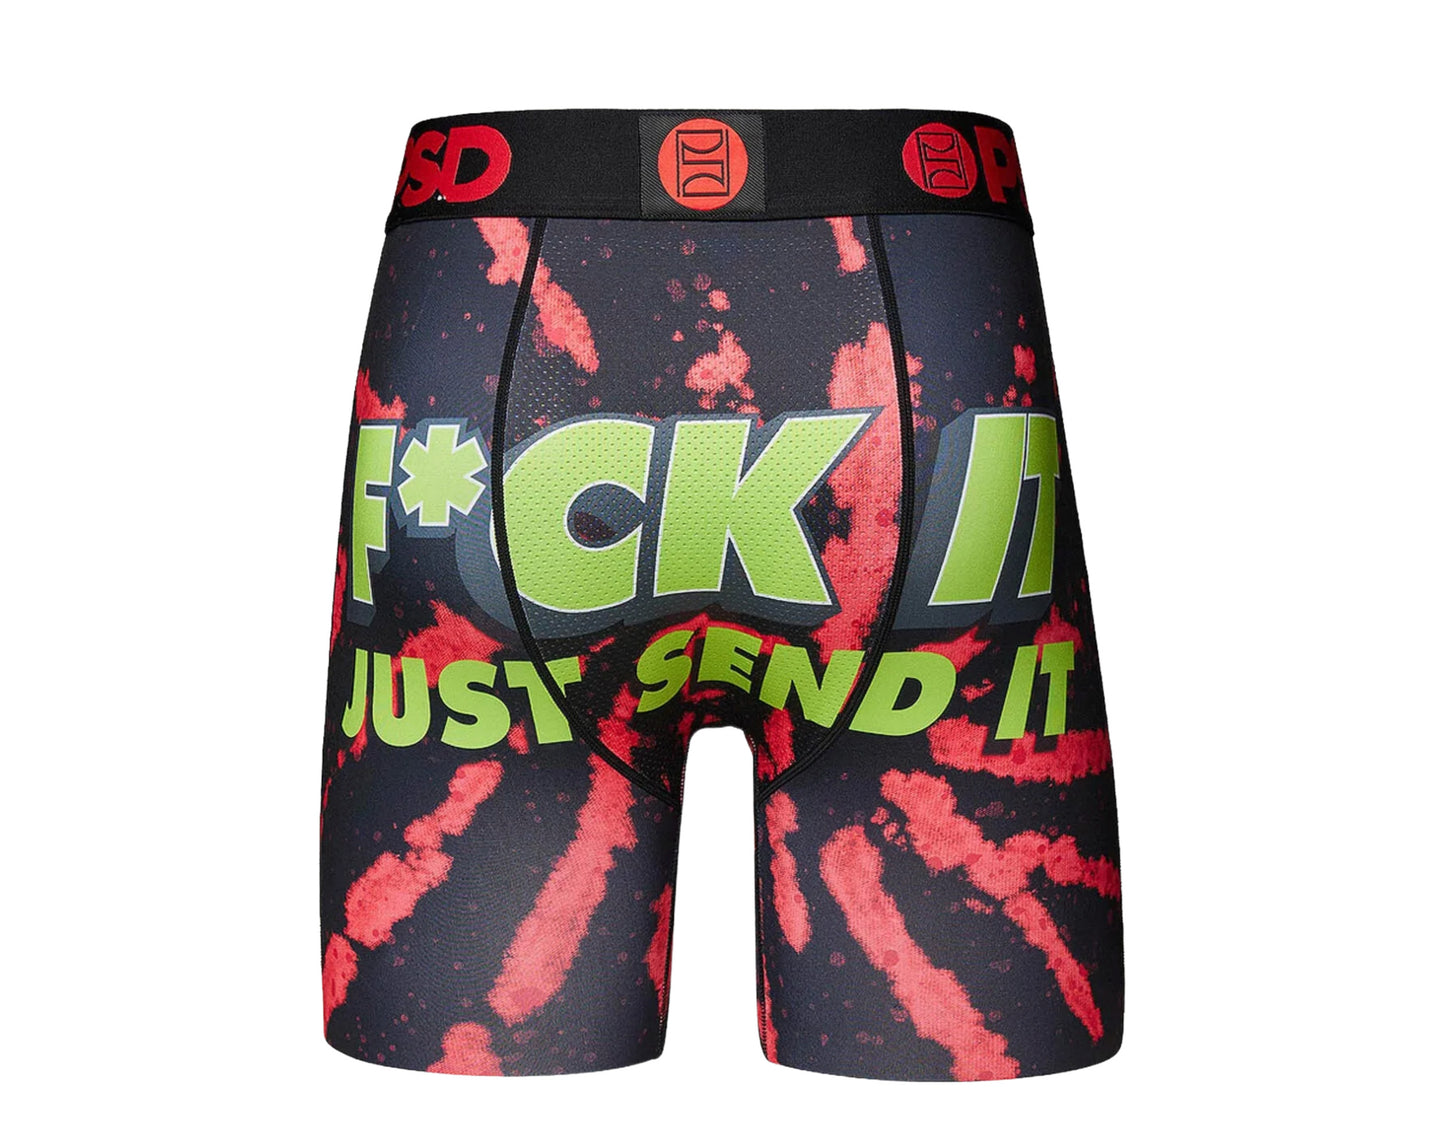 PSD F*CK It Boxer Briefs Men's Underwear